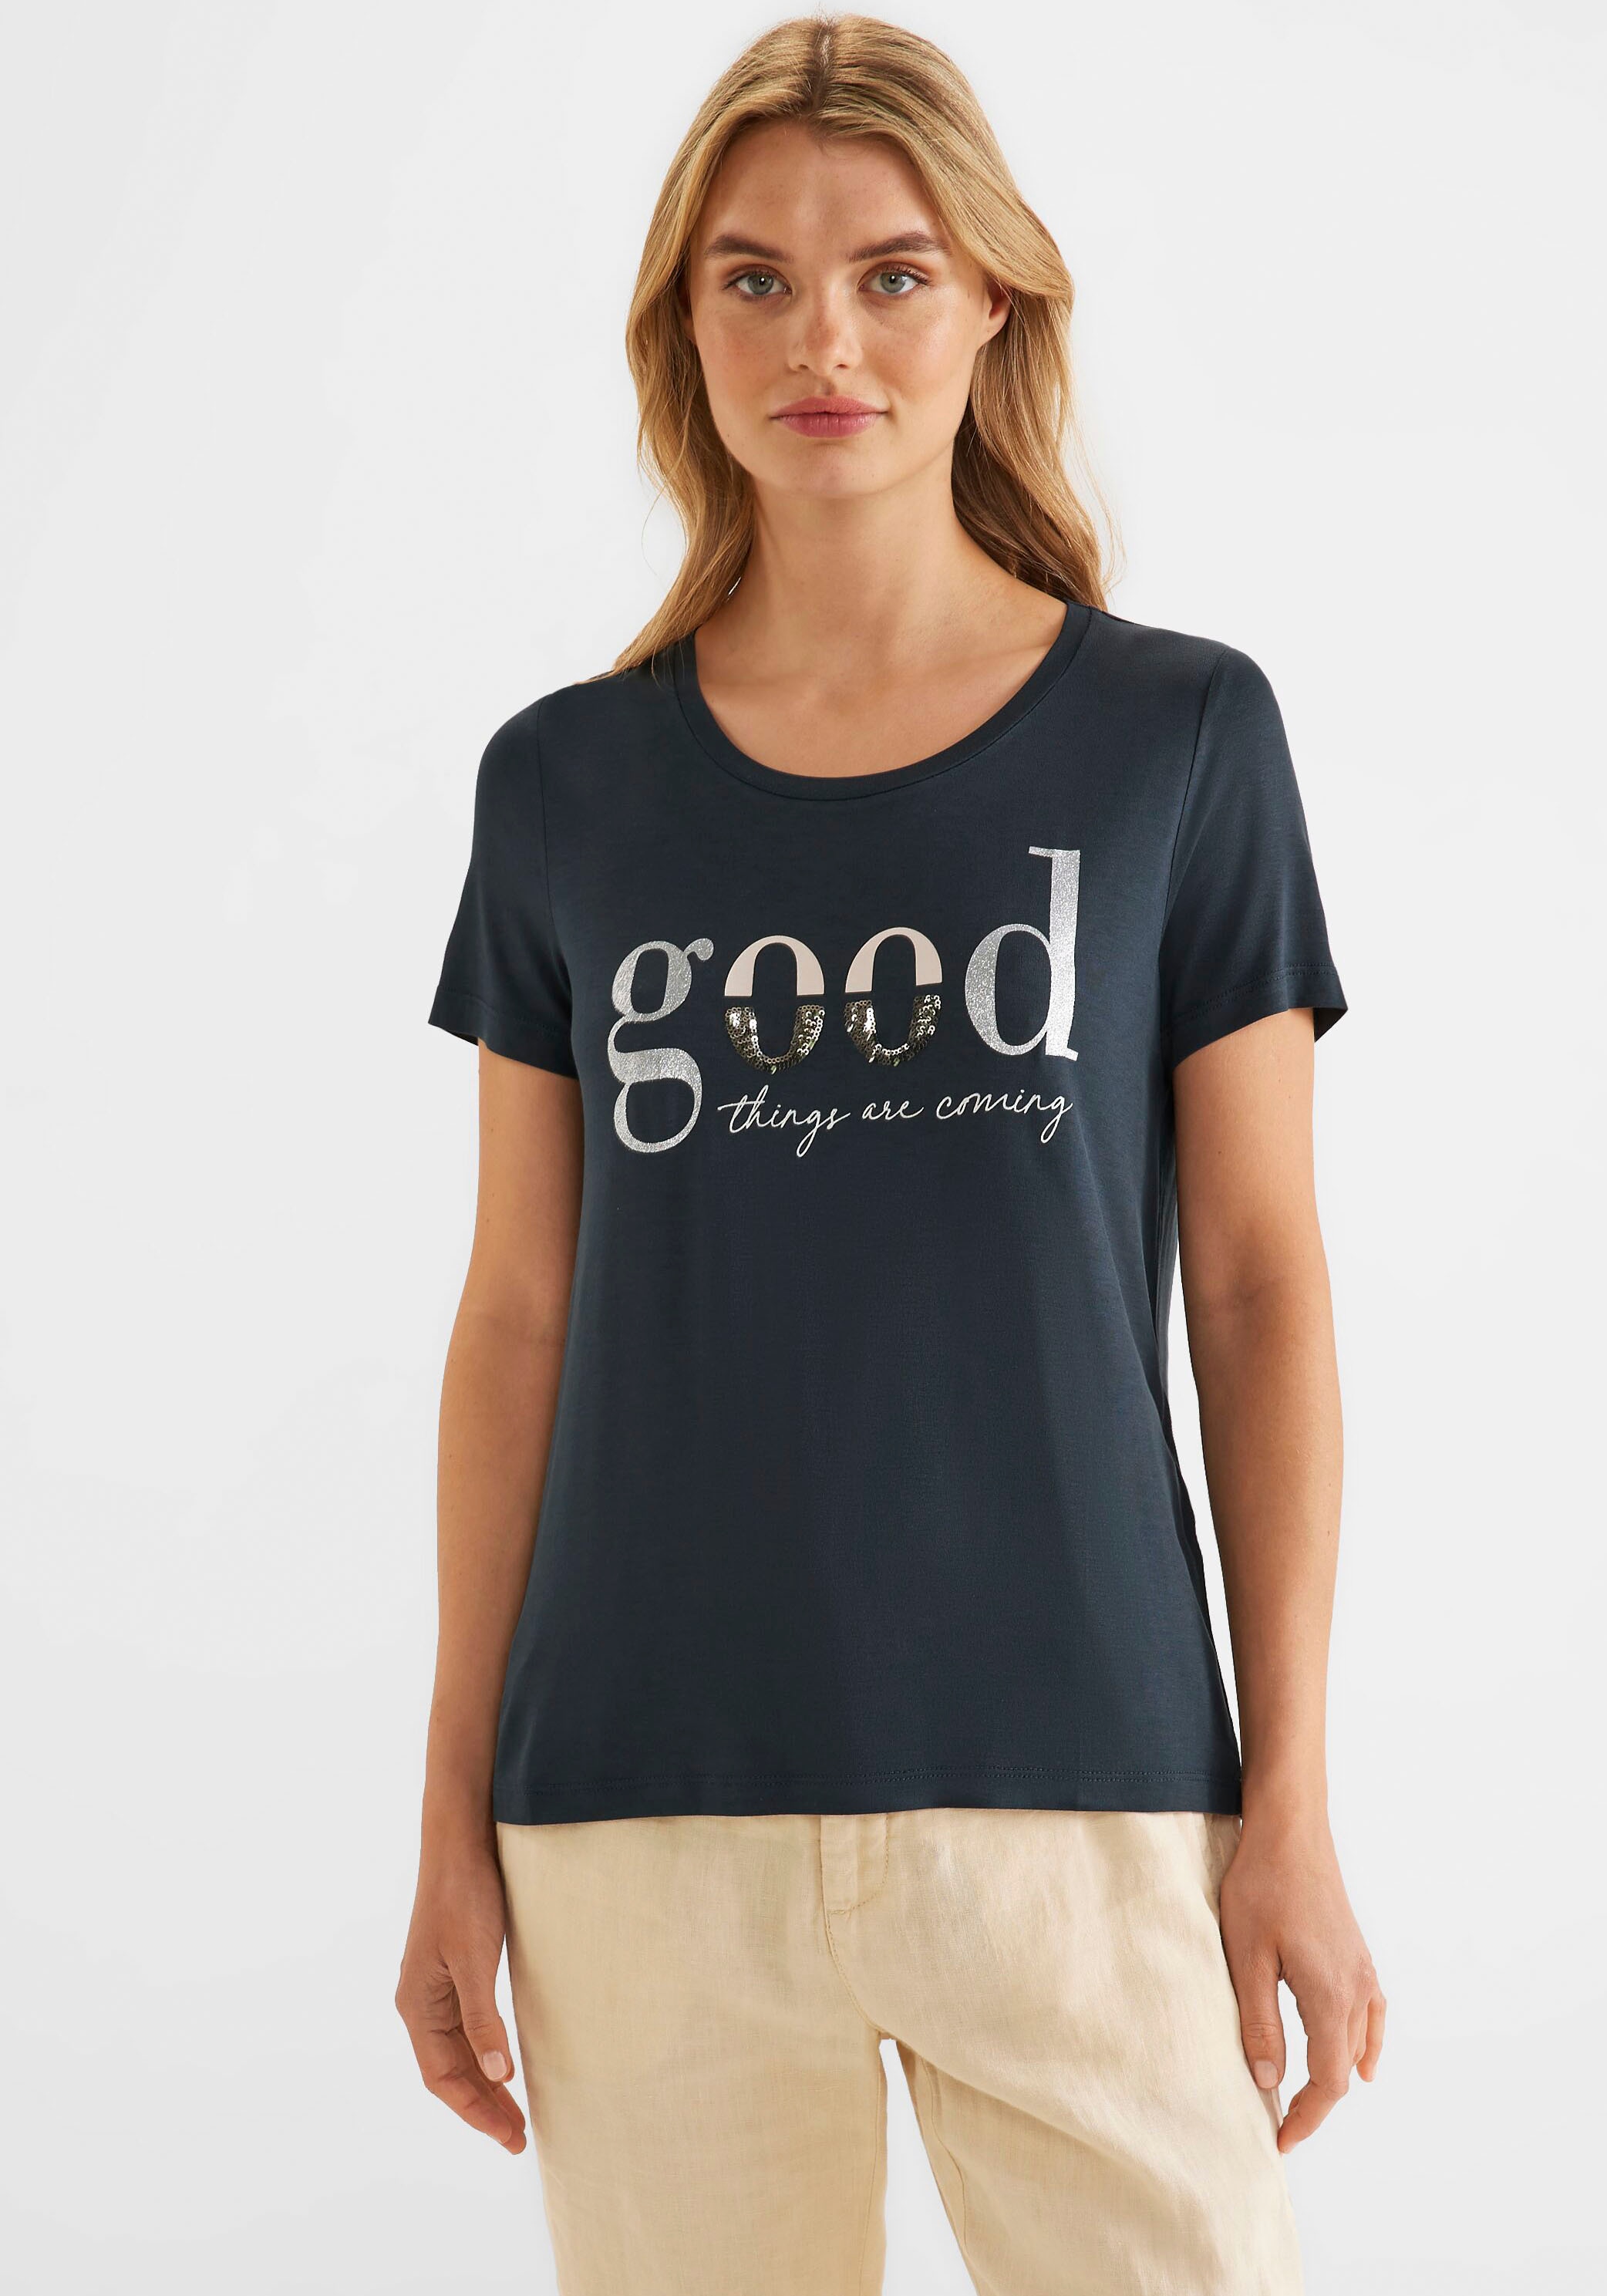 kaufen mit Jelmoli-Versand bei ONE T-Shirt, Wording STREET online Schimmerdetails und Schweiz